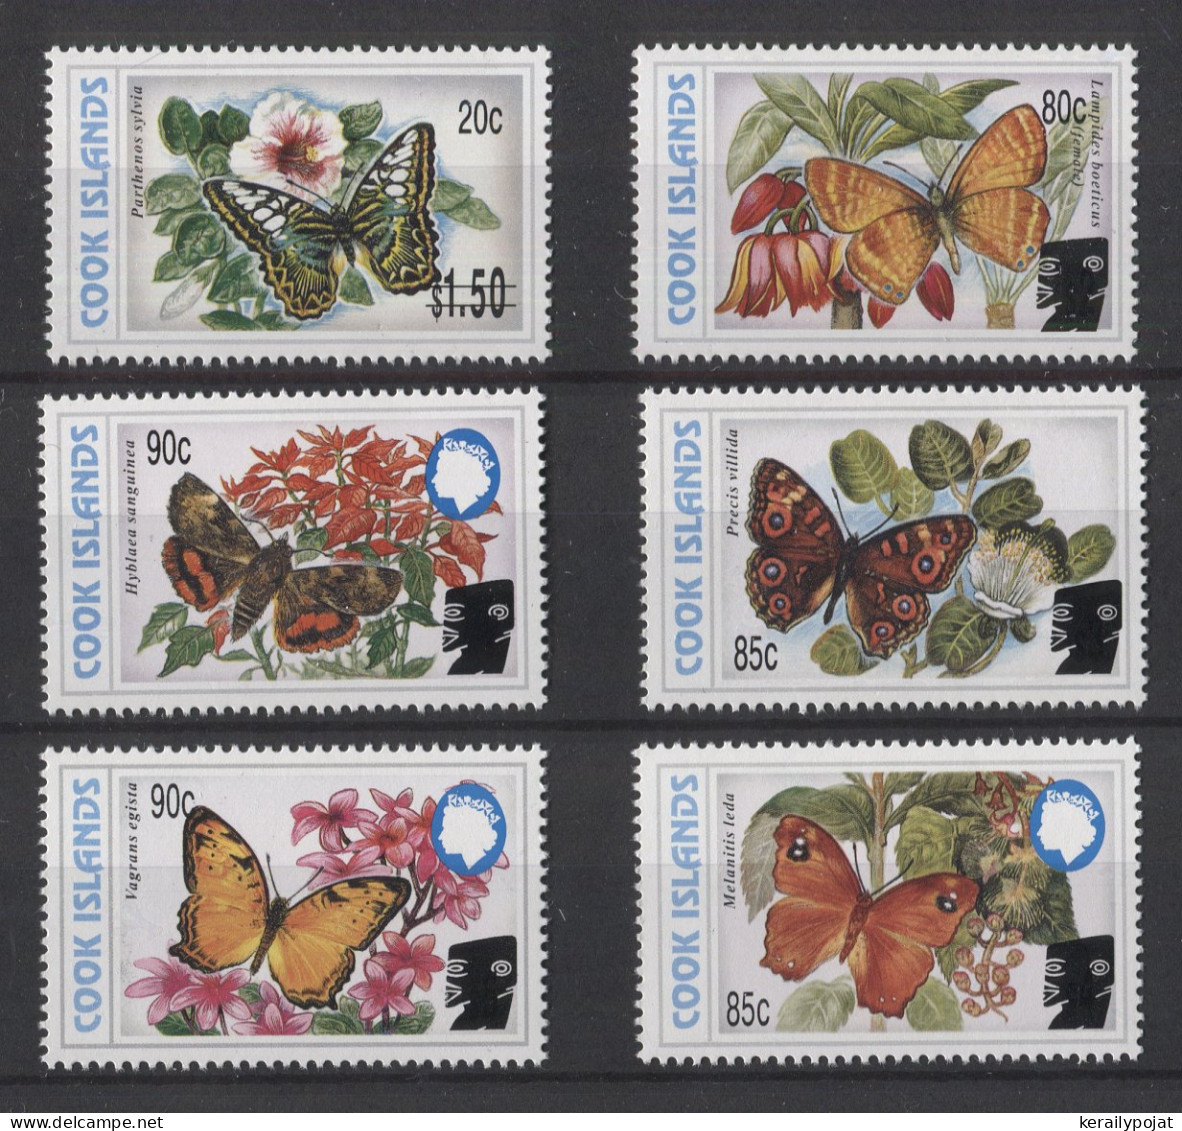 Cook Islands - 2003 Butterflies Overprints MNH__(TH-24919) - Cook